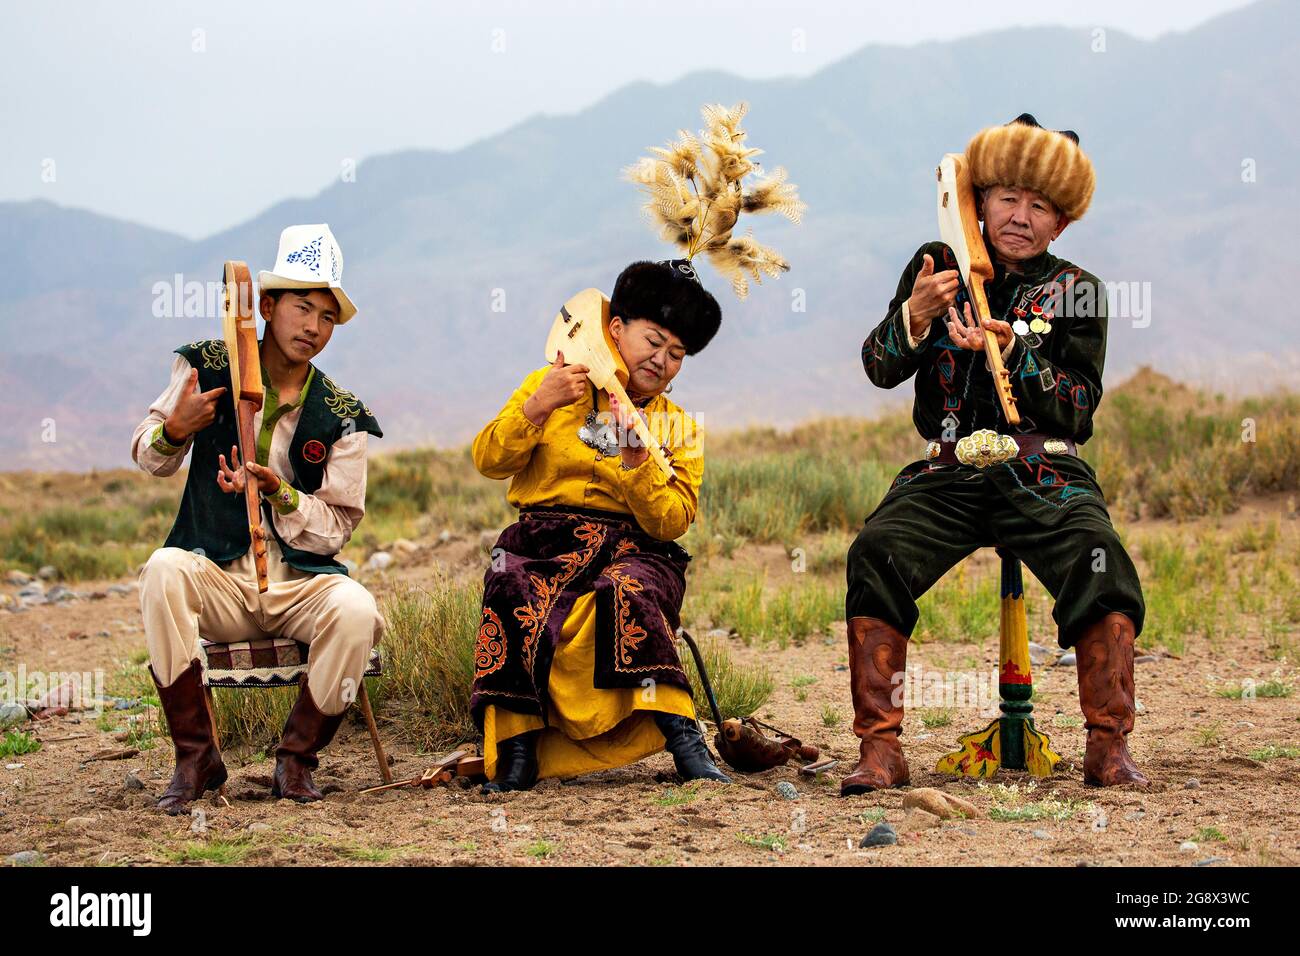 Musiciens jouant des instruments traditionnels locaux, à Issyk Kul, Kirghizistan. Banque D'Images